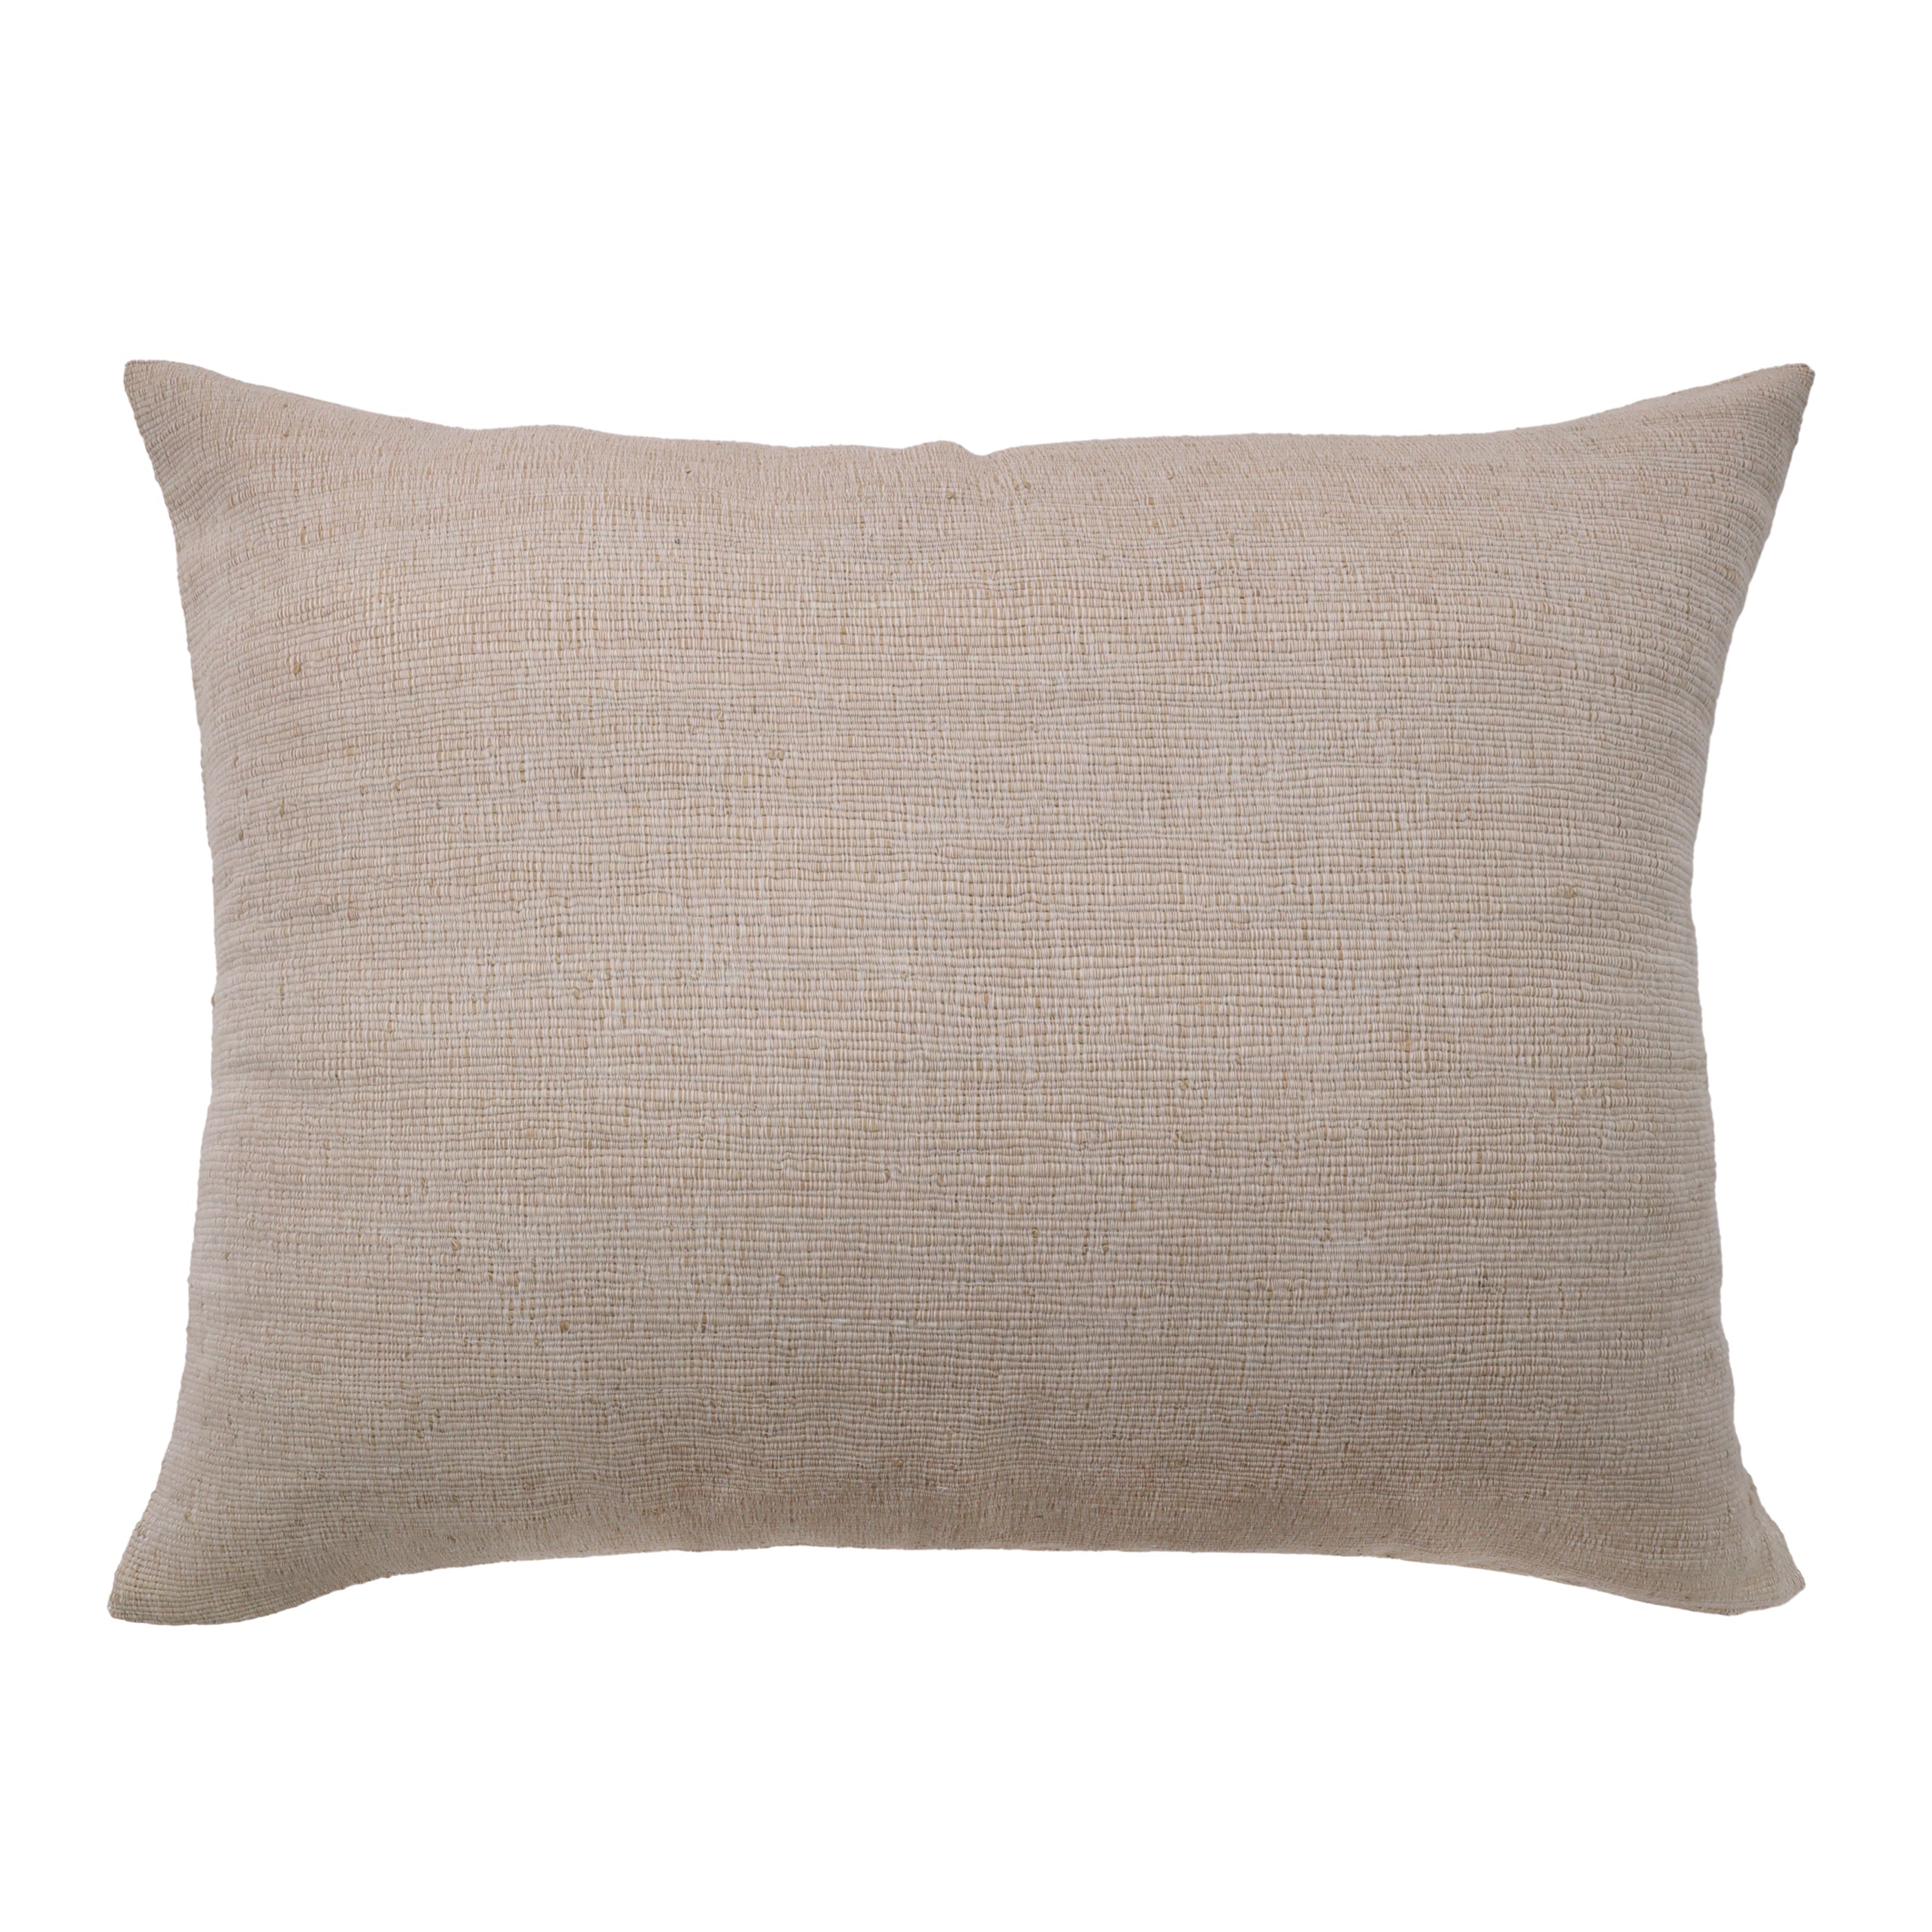 pompom at home - athena - big pillow - natural color